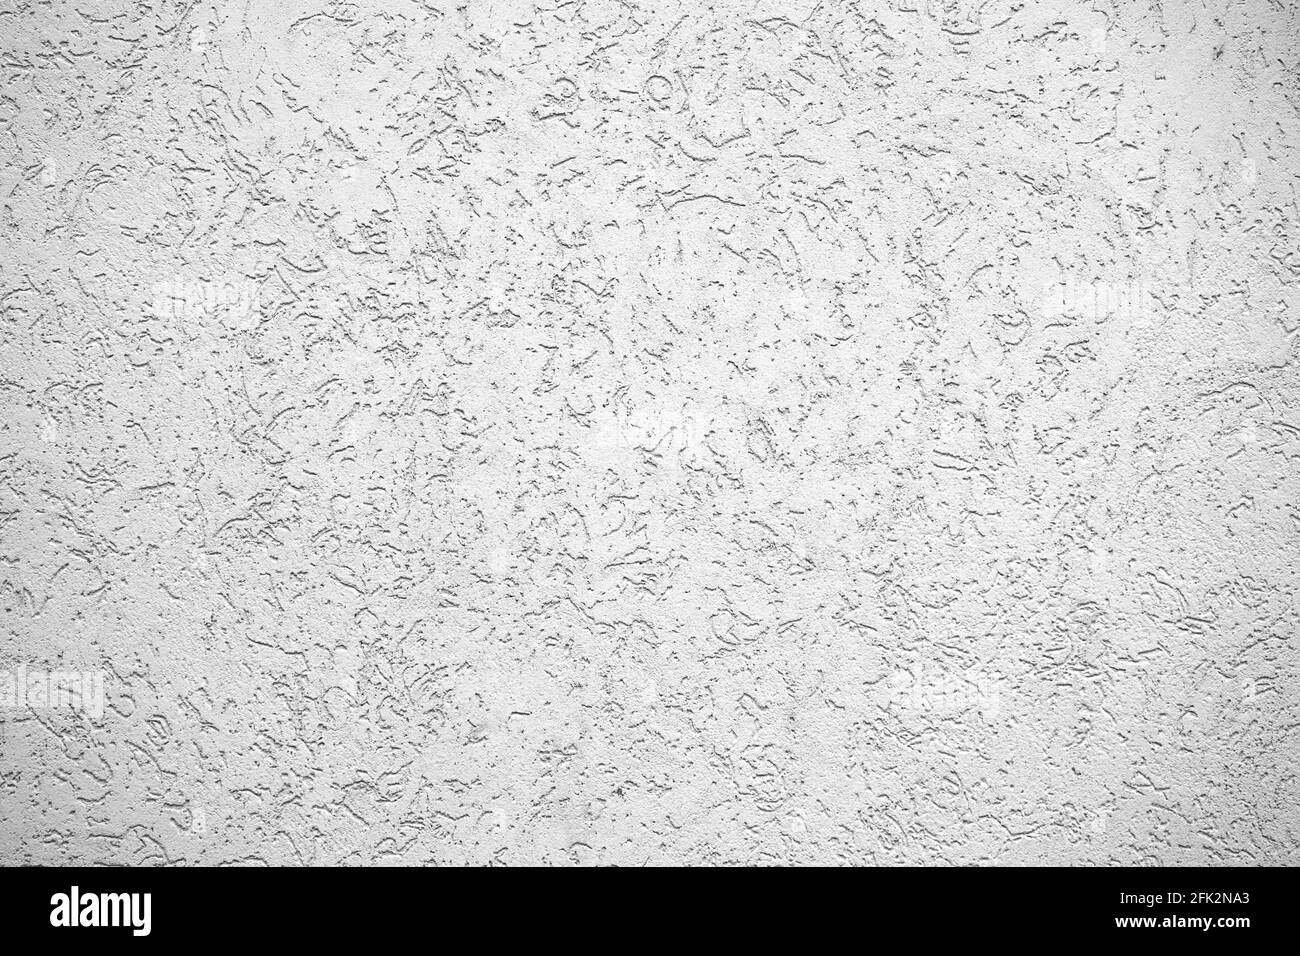 La texture du plâtre est le scarabée sur le mur. Texture grise transparente. Banque D'Images